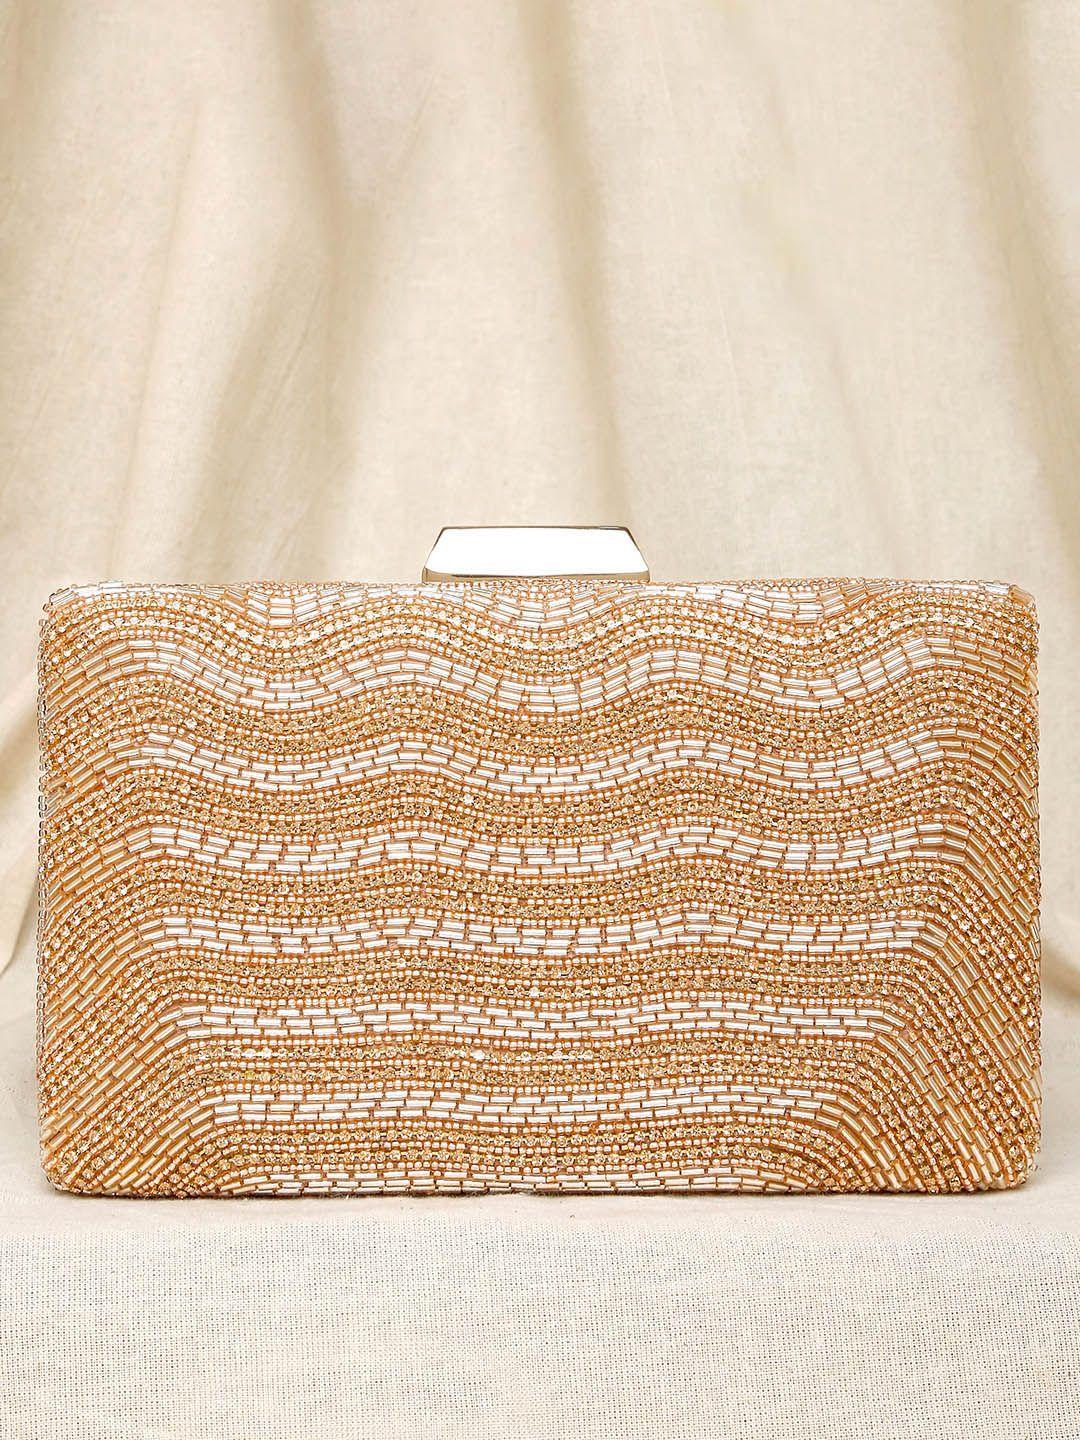 peora rose gold embellished purse clutch